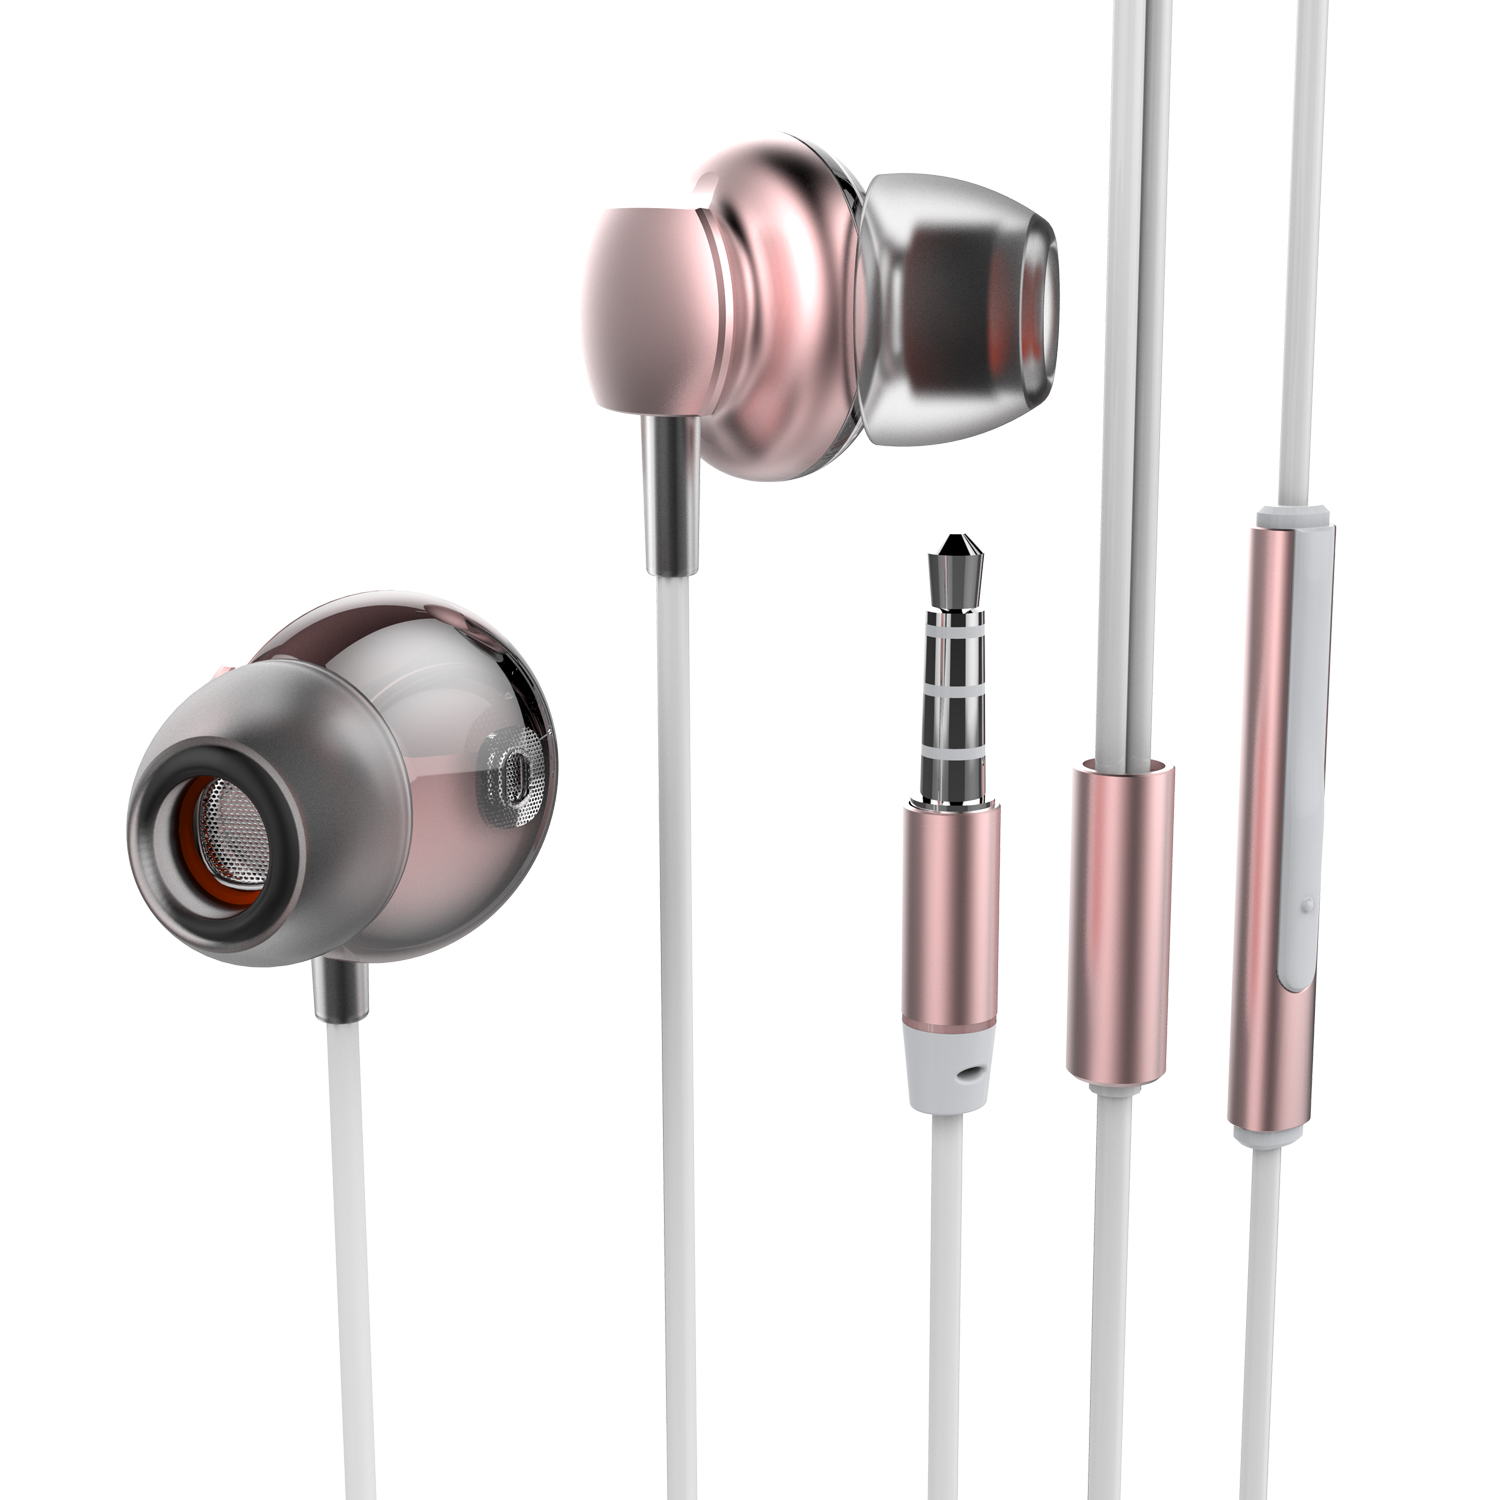 OEM-M169 music headphones good in ear earphone